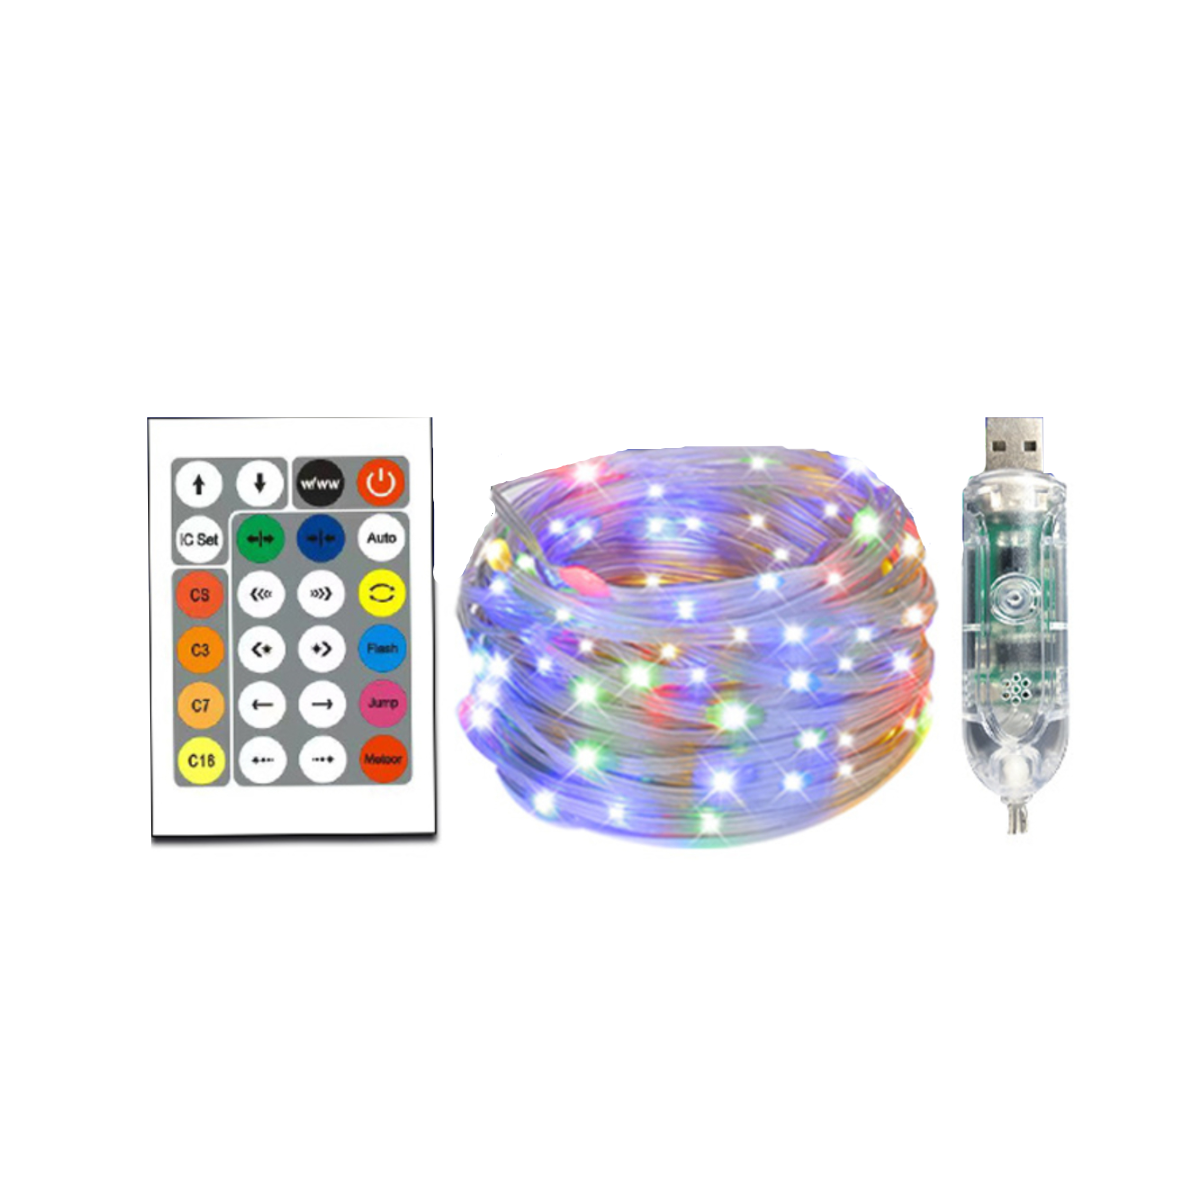 UWOT Sprachaktivierter Lichtstreifen-USB: Bluetooth&APP-Steuerung, weihnachtliches LED white Stripes, 15M Atmosphärenlicht